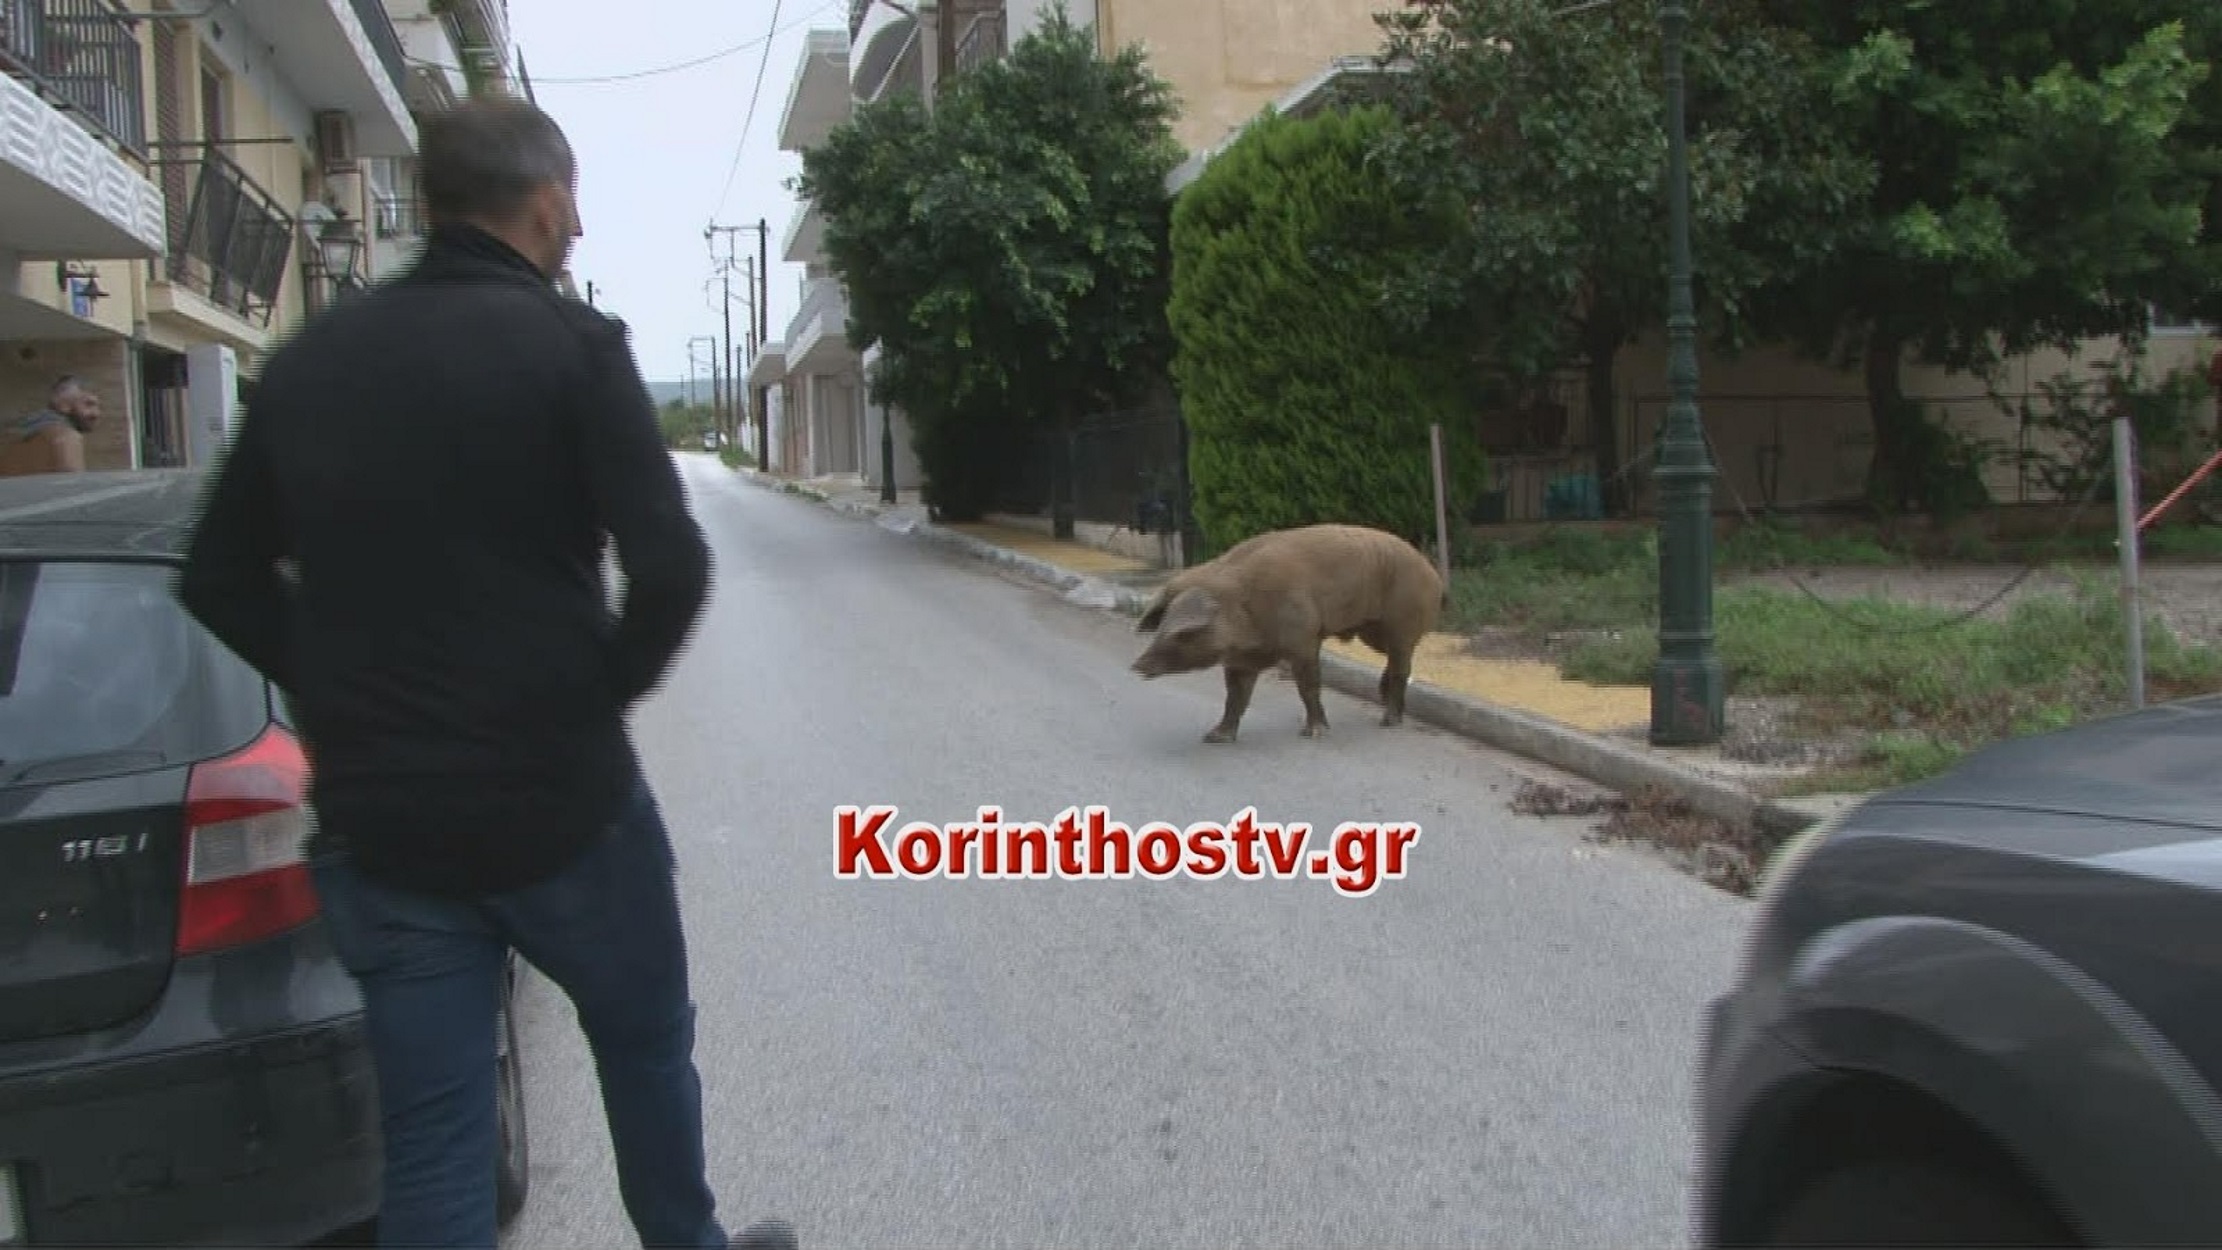 Μεγάλο γουρούνι κόβει βόλτες στο κέντρο του Λουτρακίου! video